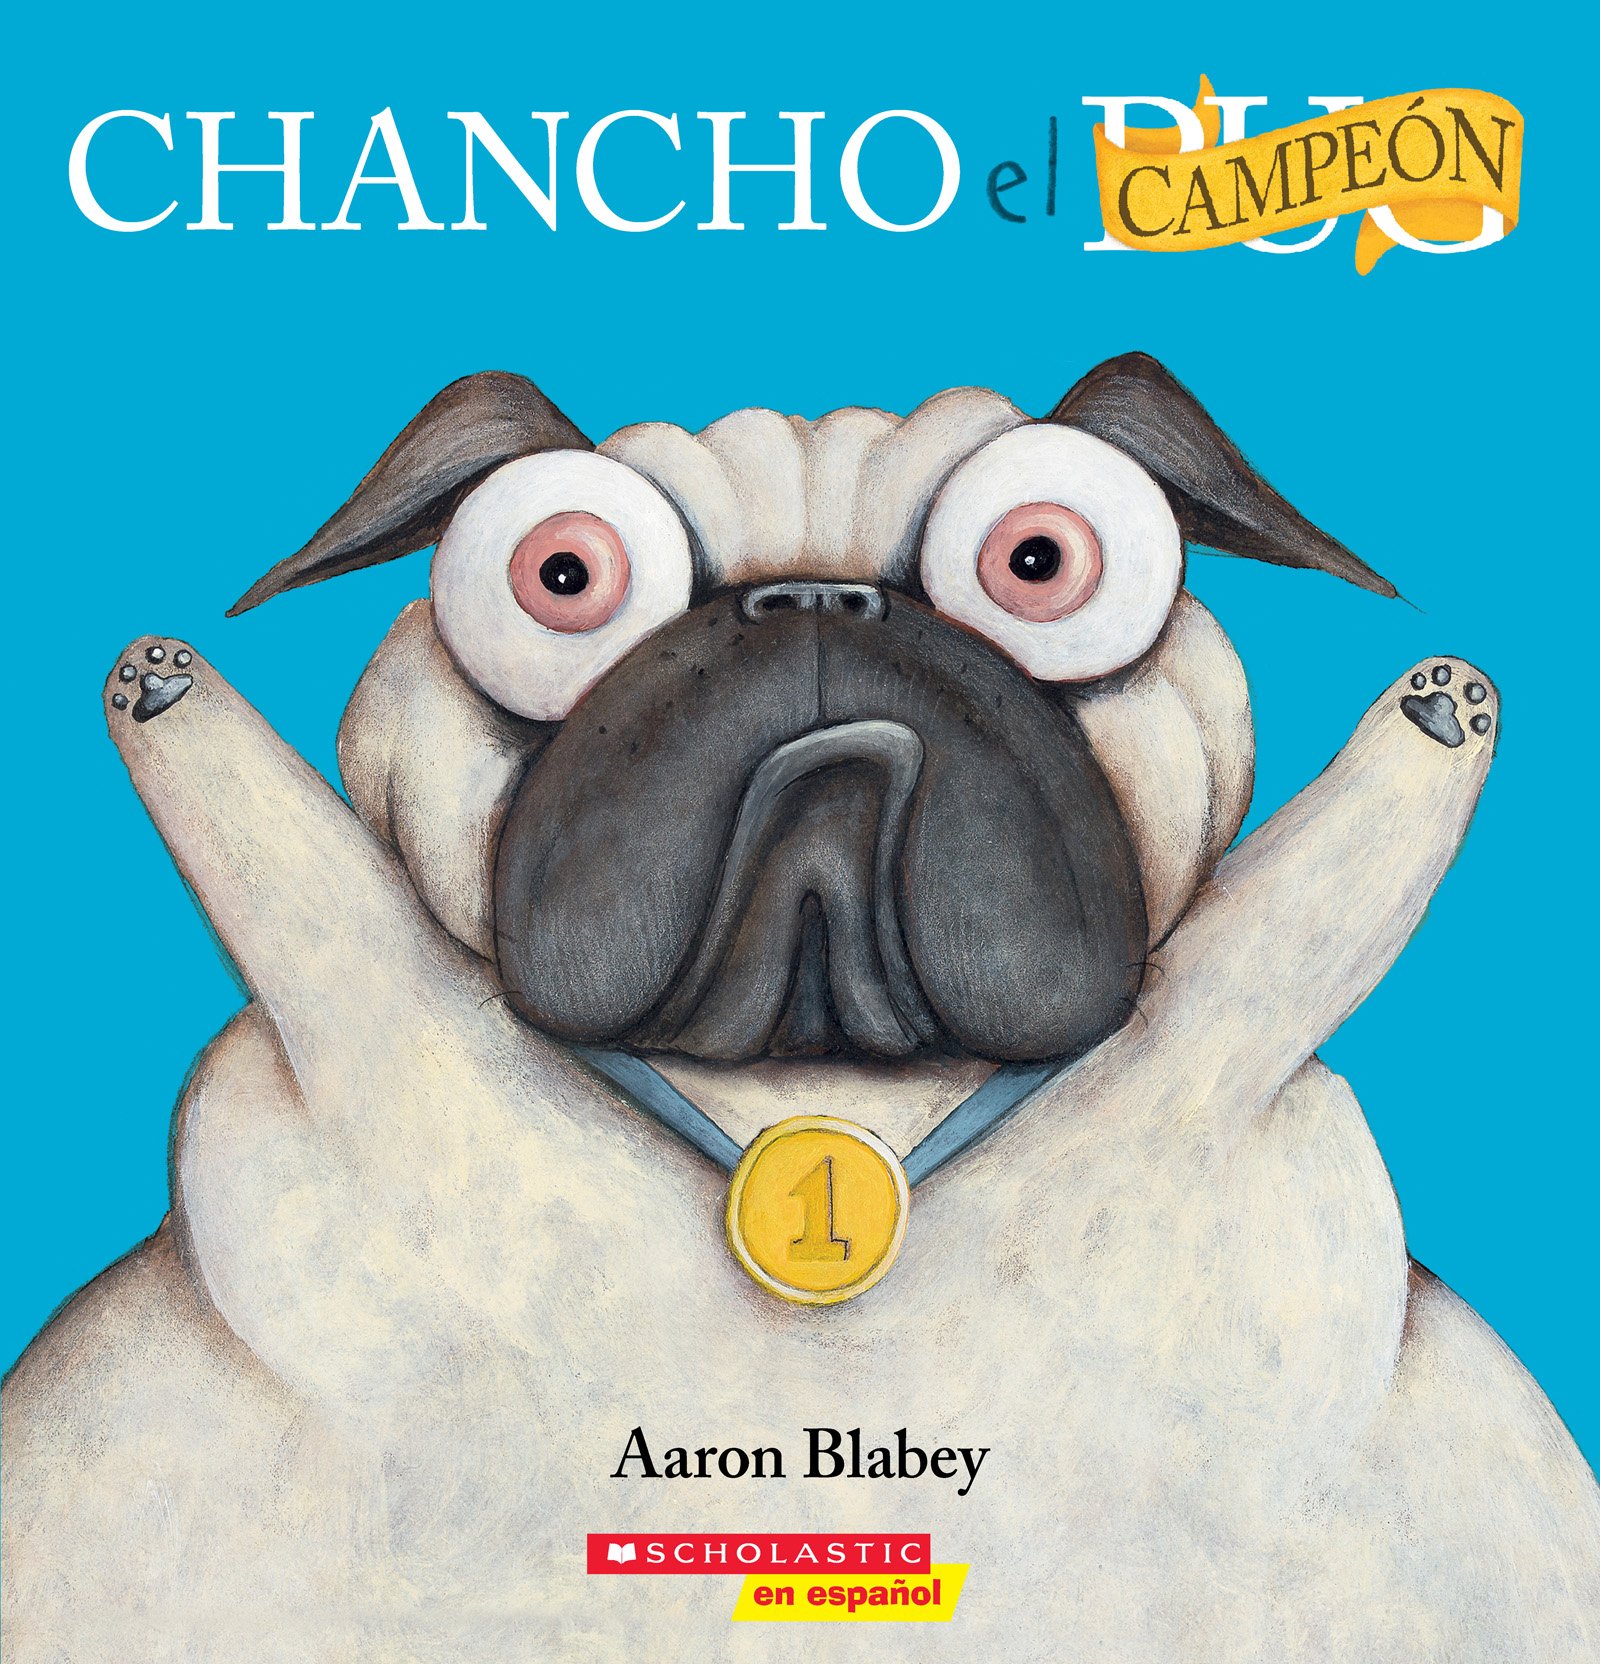 Chancho el campeón (Pig the Winner) (Chancho el pug) (Spanish Edition)